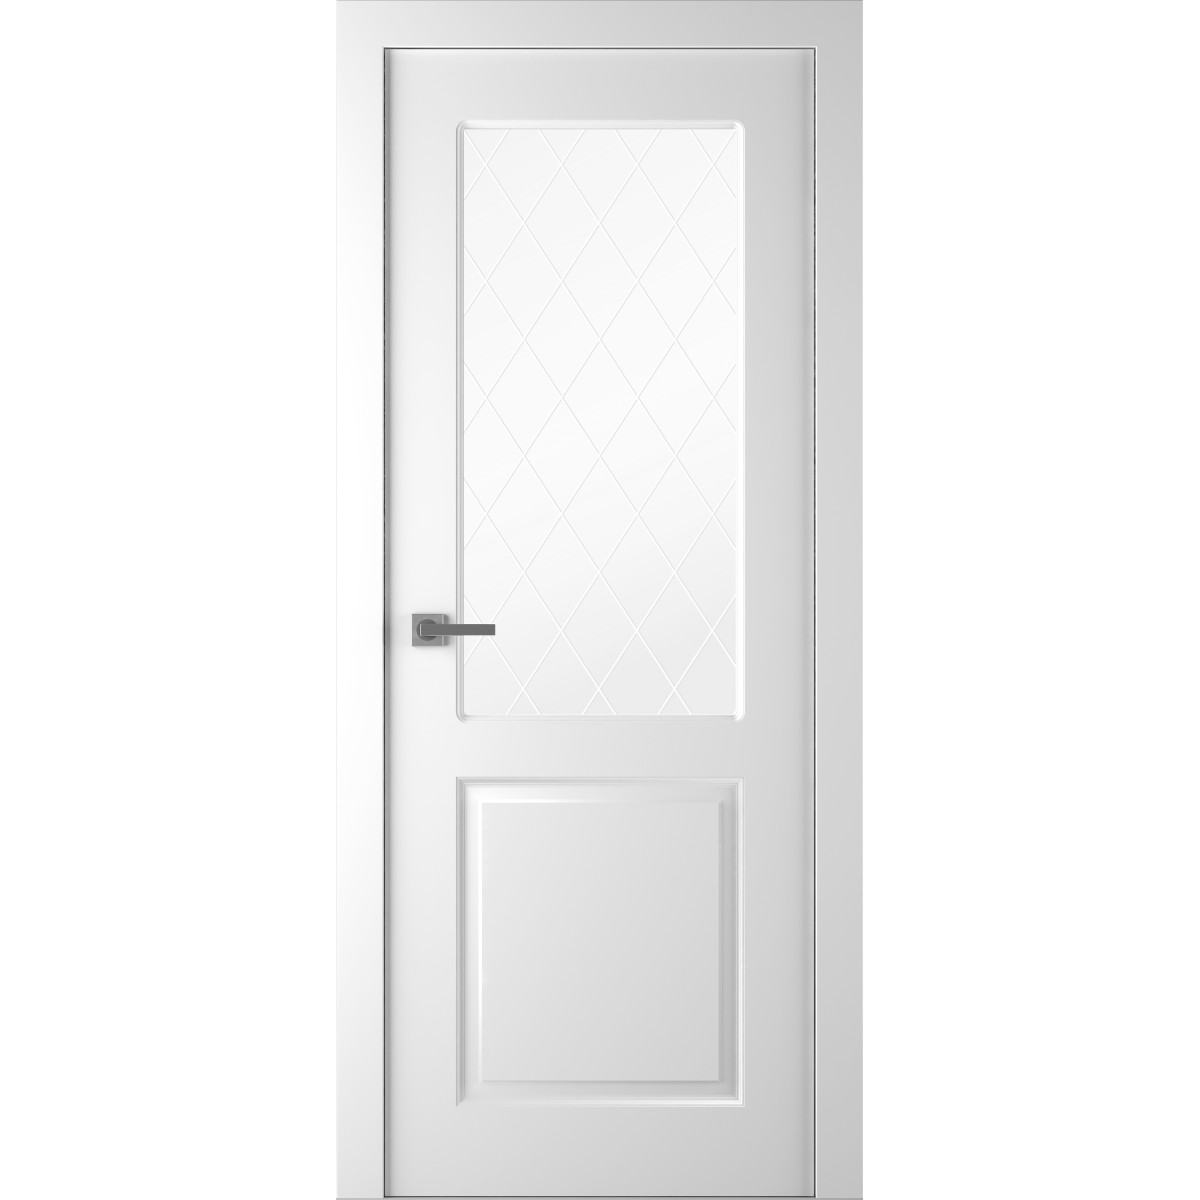 Дверь межкомнатная остеклённая Австралия, 200x90 см, эмаль, цвет белый, с фурнитурой